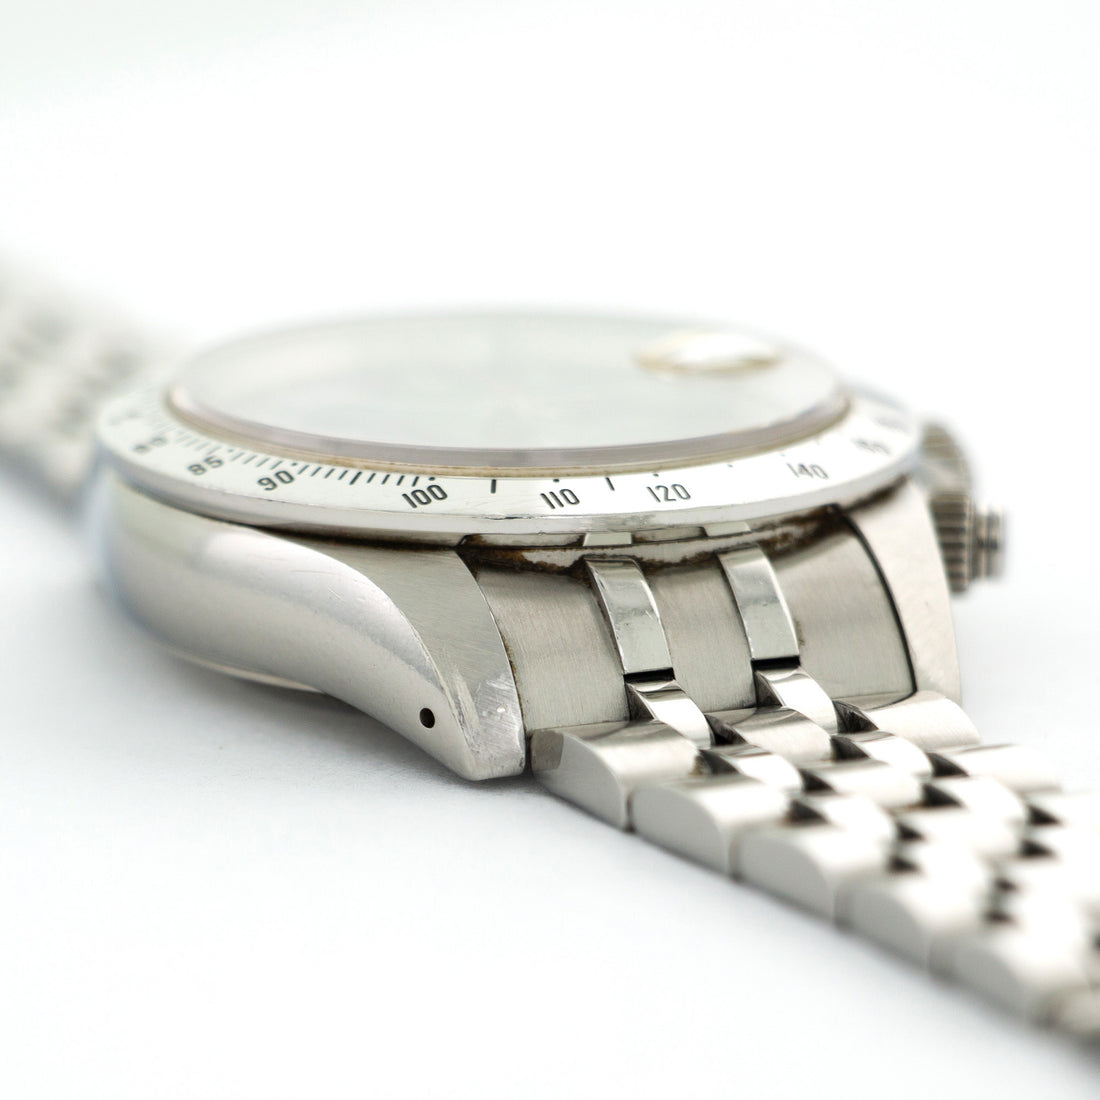 Tudor Chrono-Time Watch Ref. 79280